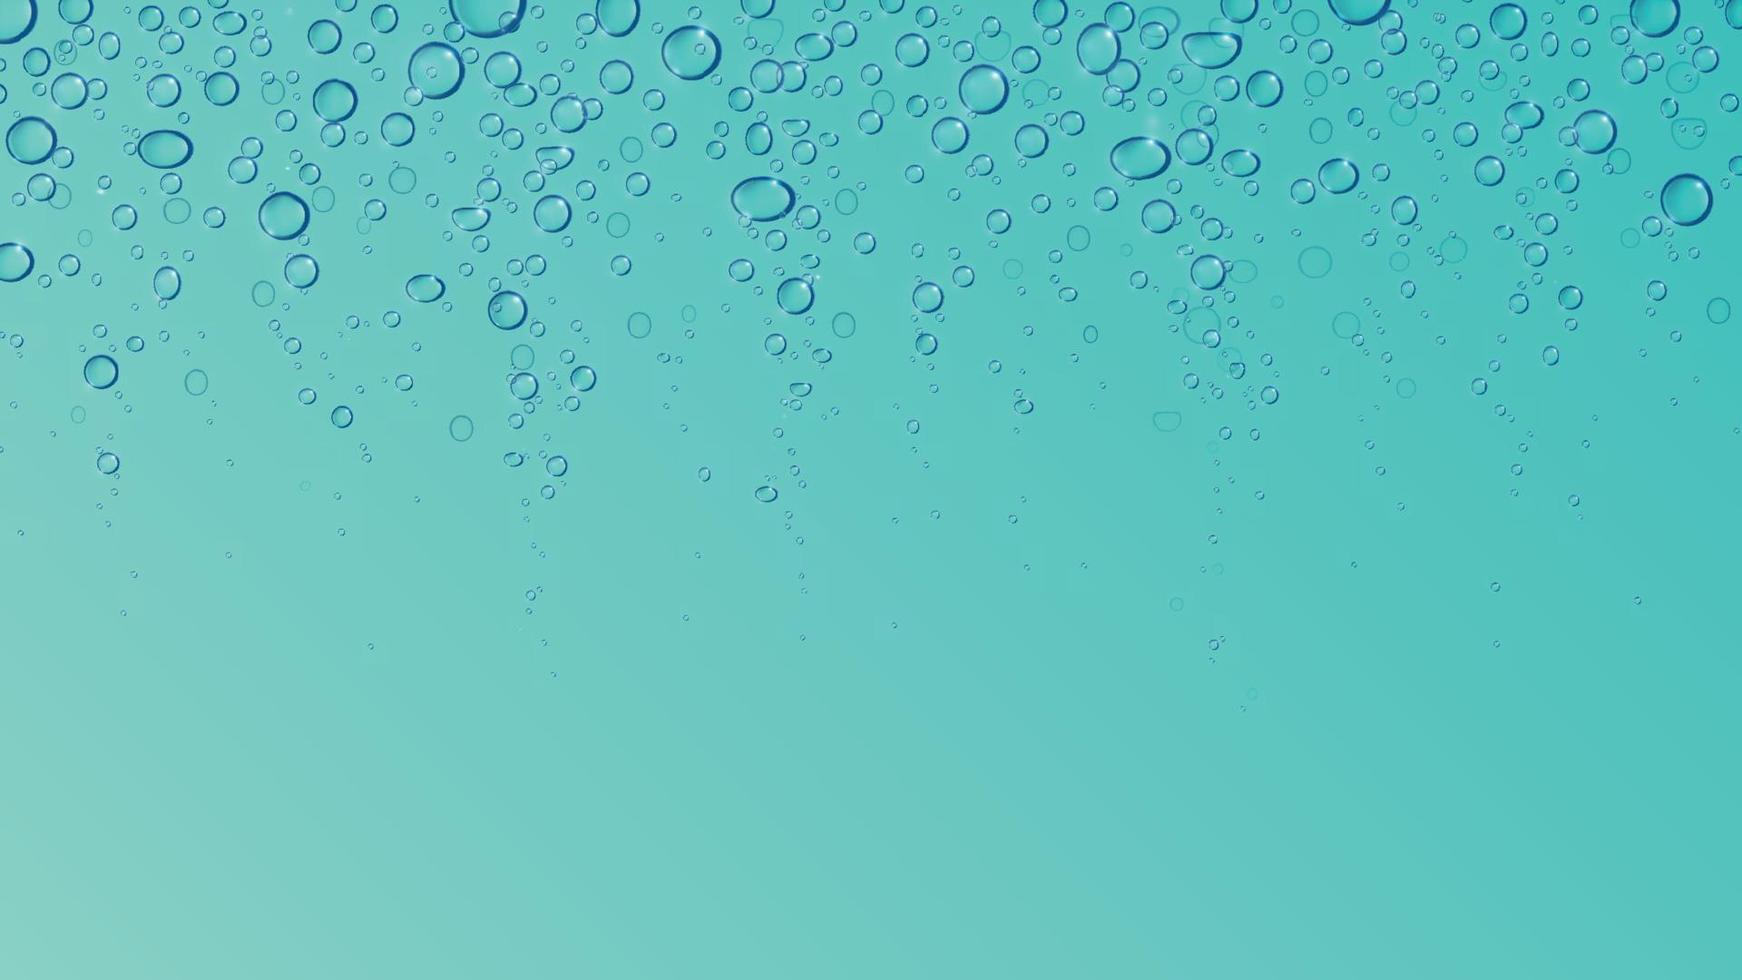 água ou oxigênio ar efervescer, refrigerante bolhas, carbonatado bebida, embaixo da agua abstrato fundo papel de parede vetor